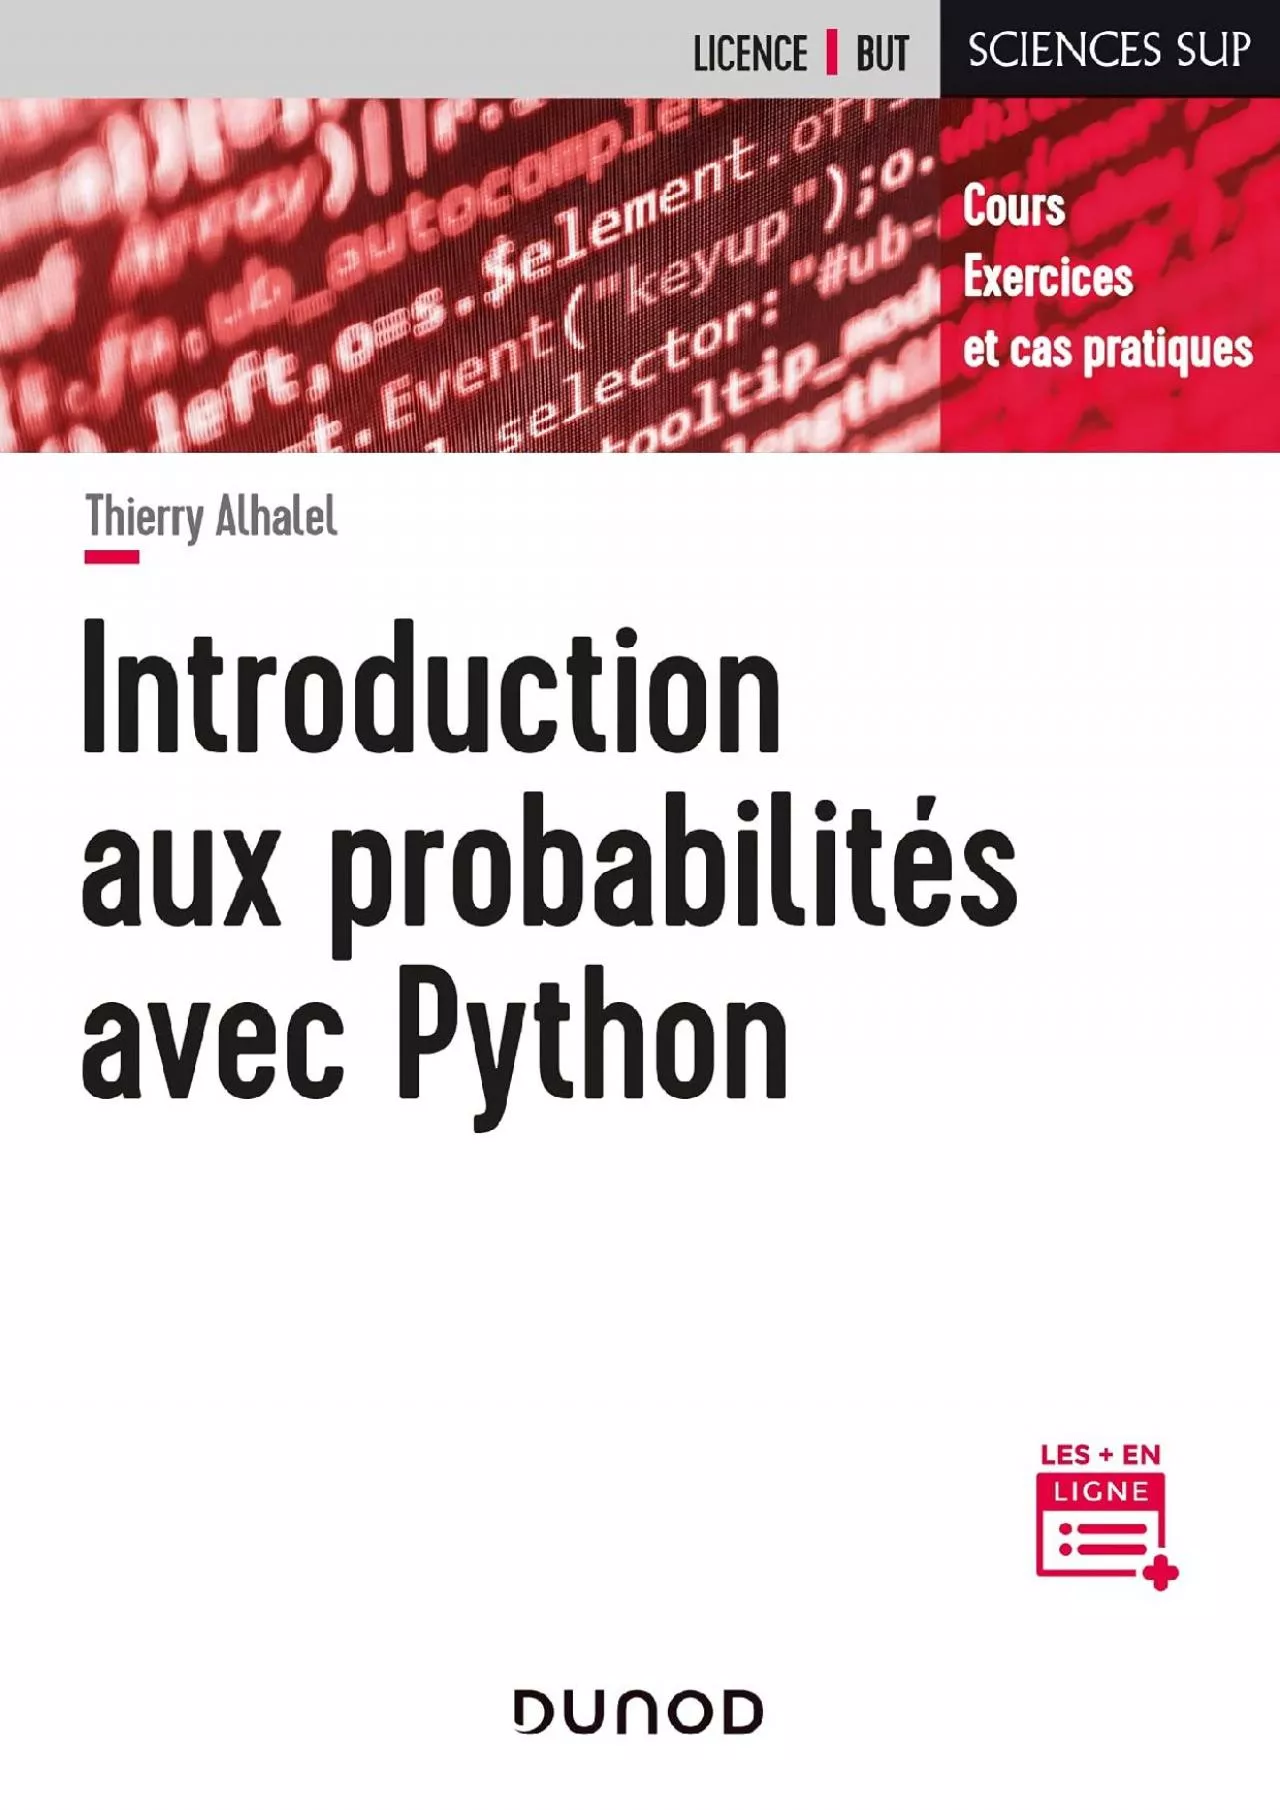 [BEST]-Introduction aux probabilités avec Python - Cours, exercices et cas pratiques: